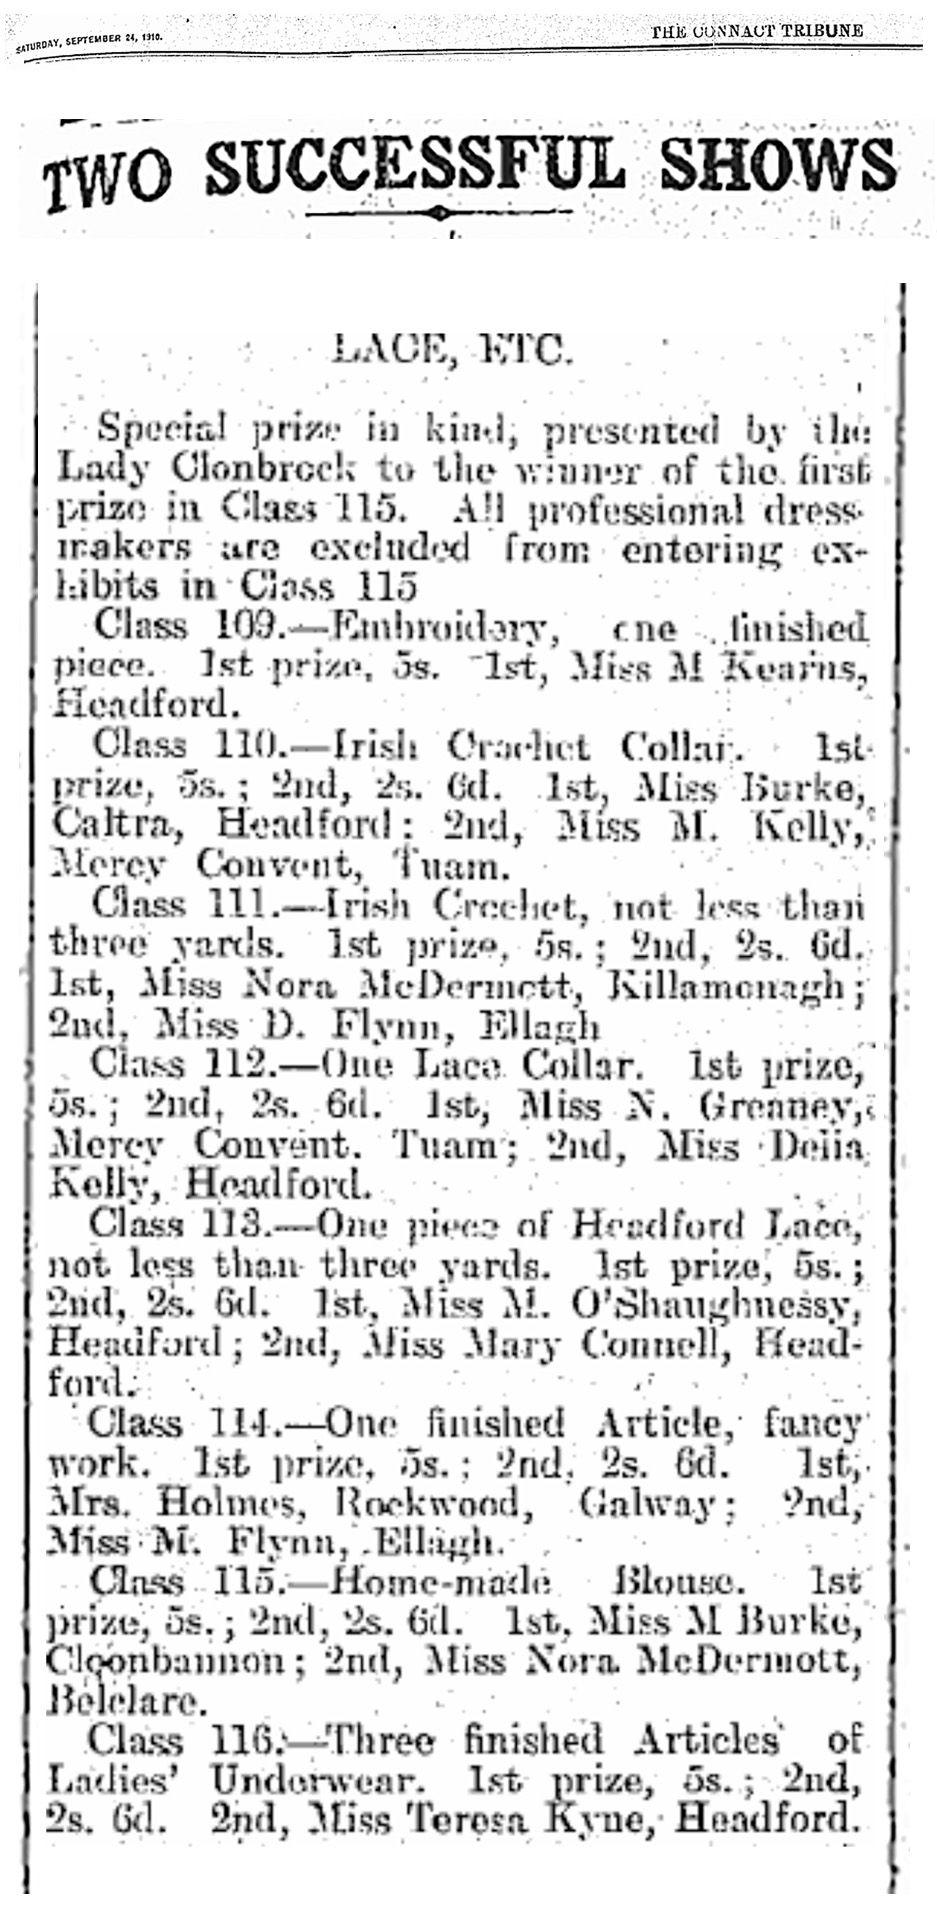 connacht tribune 1910 headford lace agricultural show